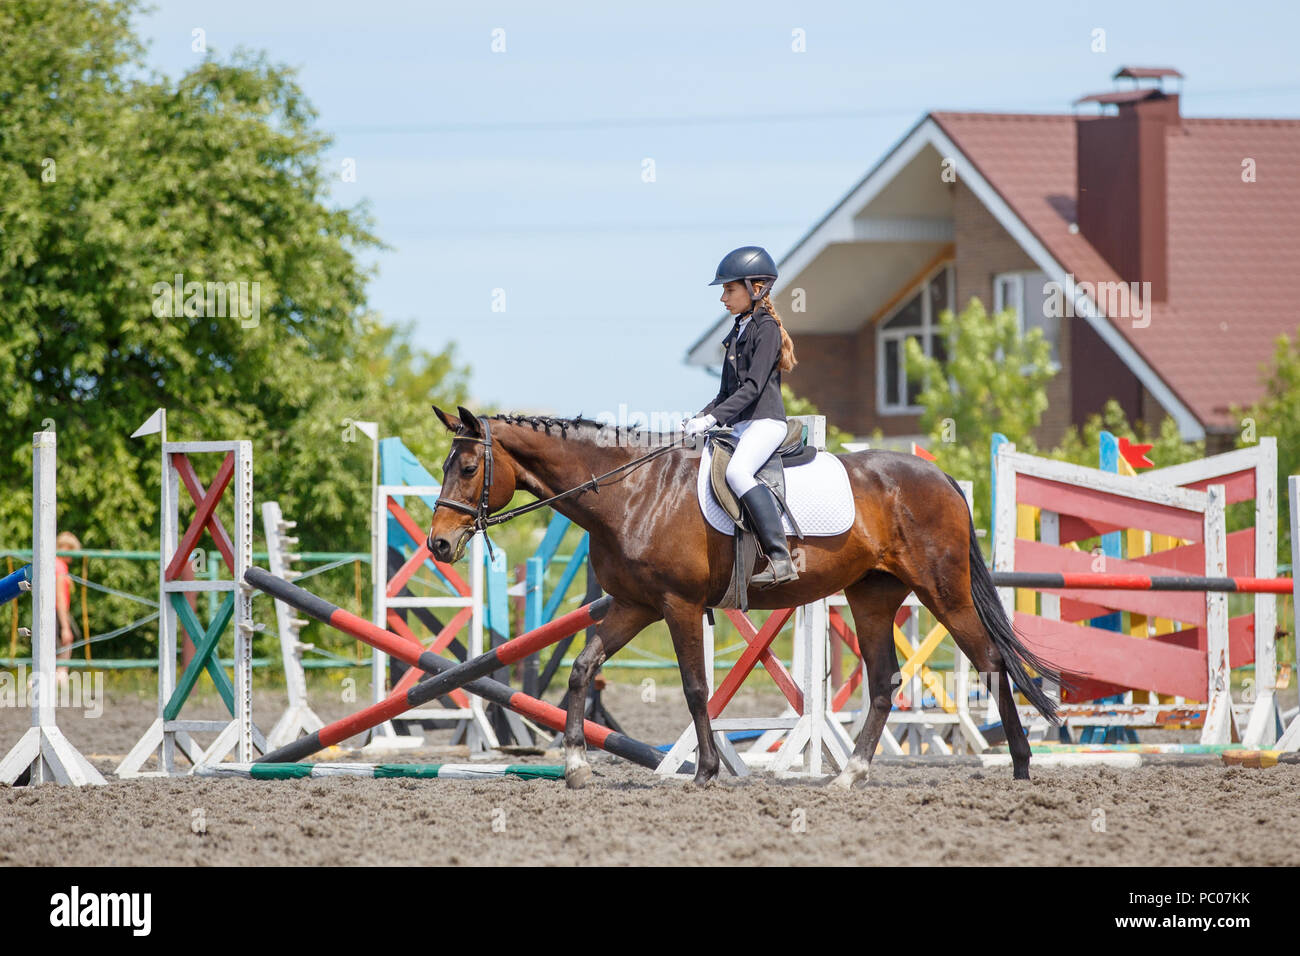 Girl riding horse pour réchauffer avant de perfomance Banque D'Images